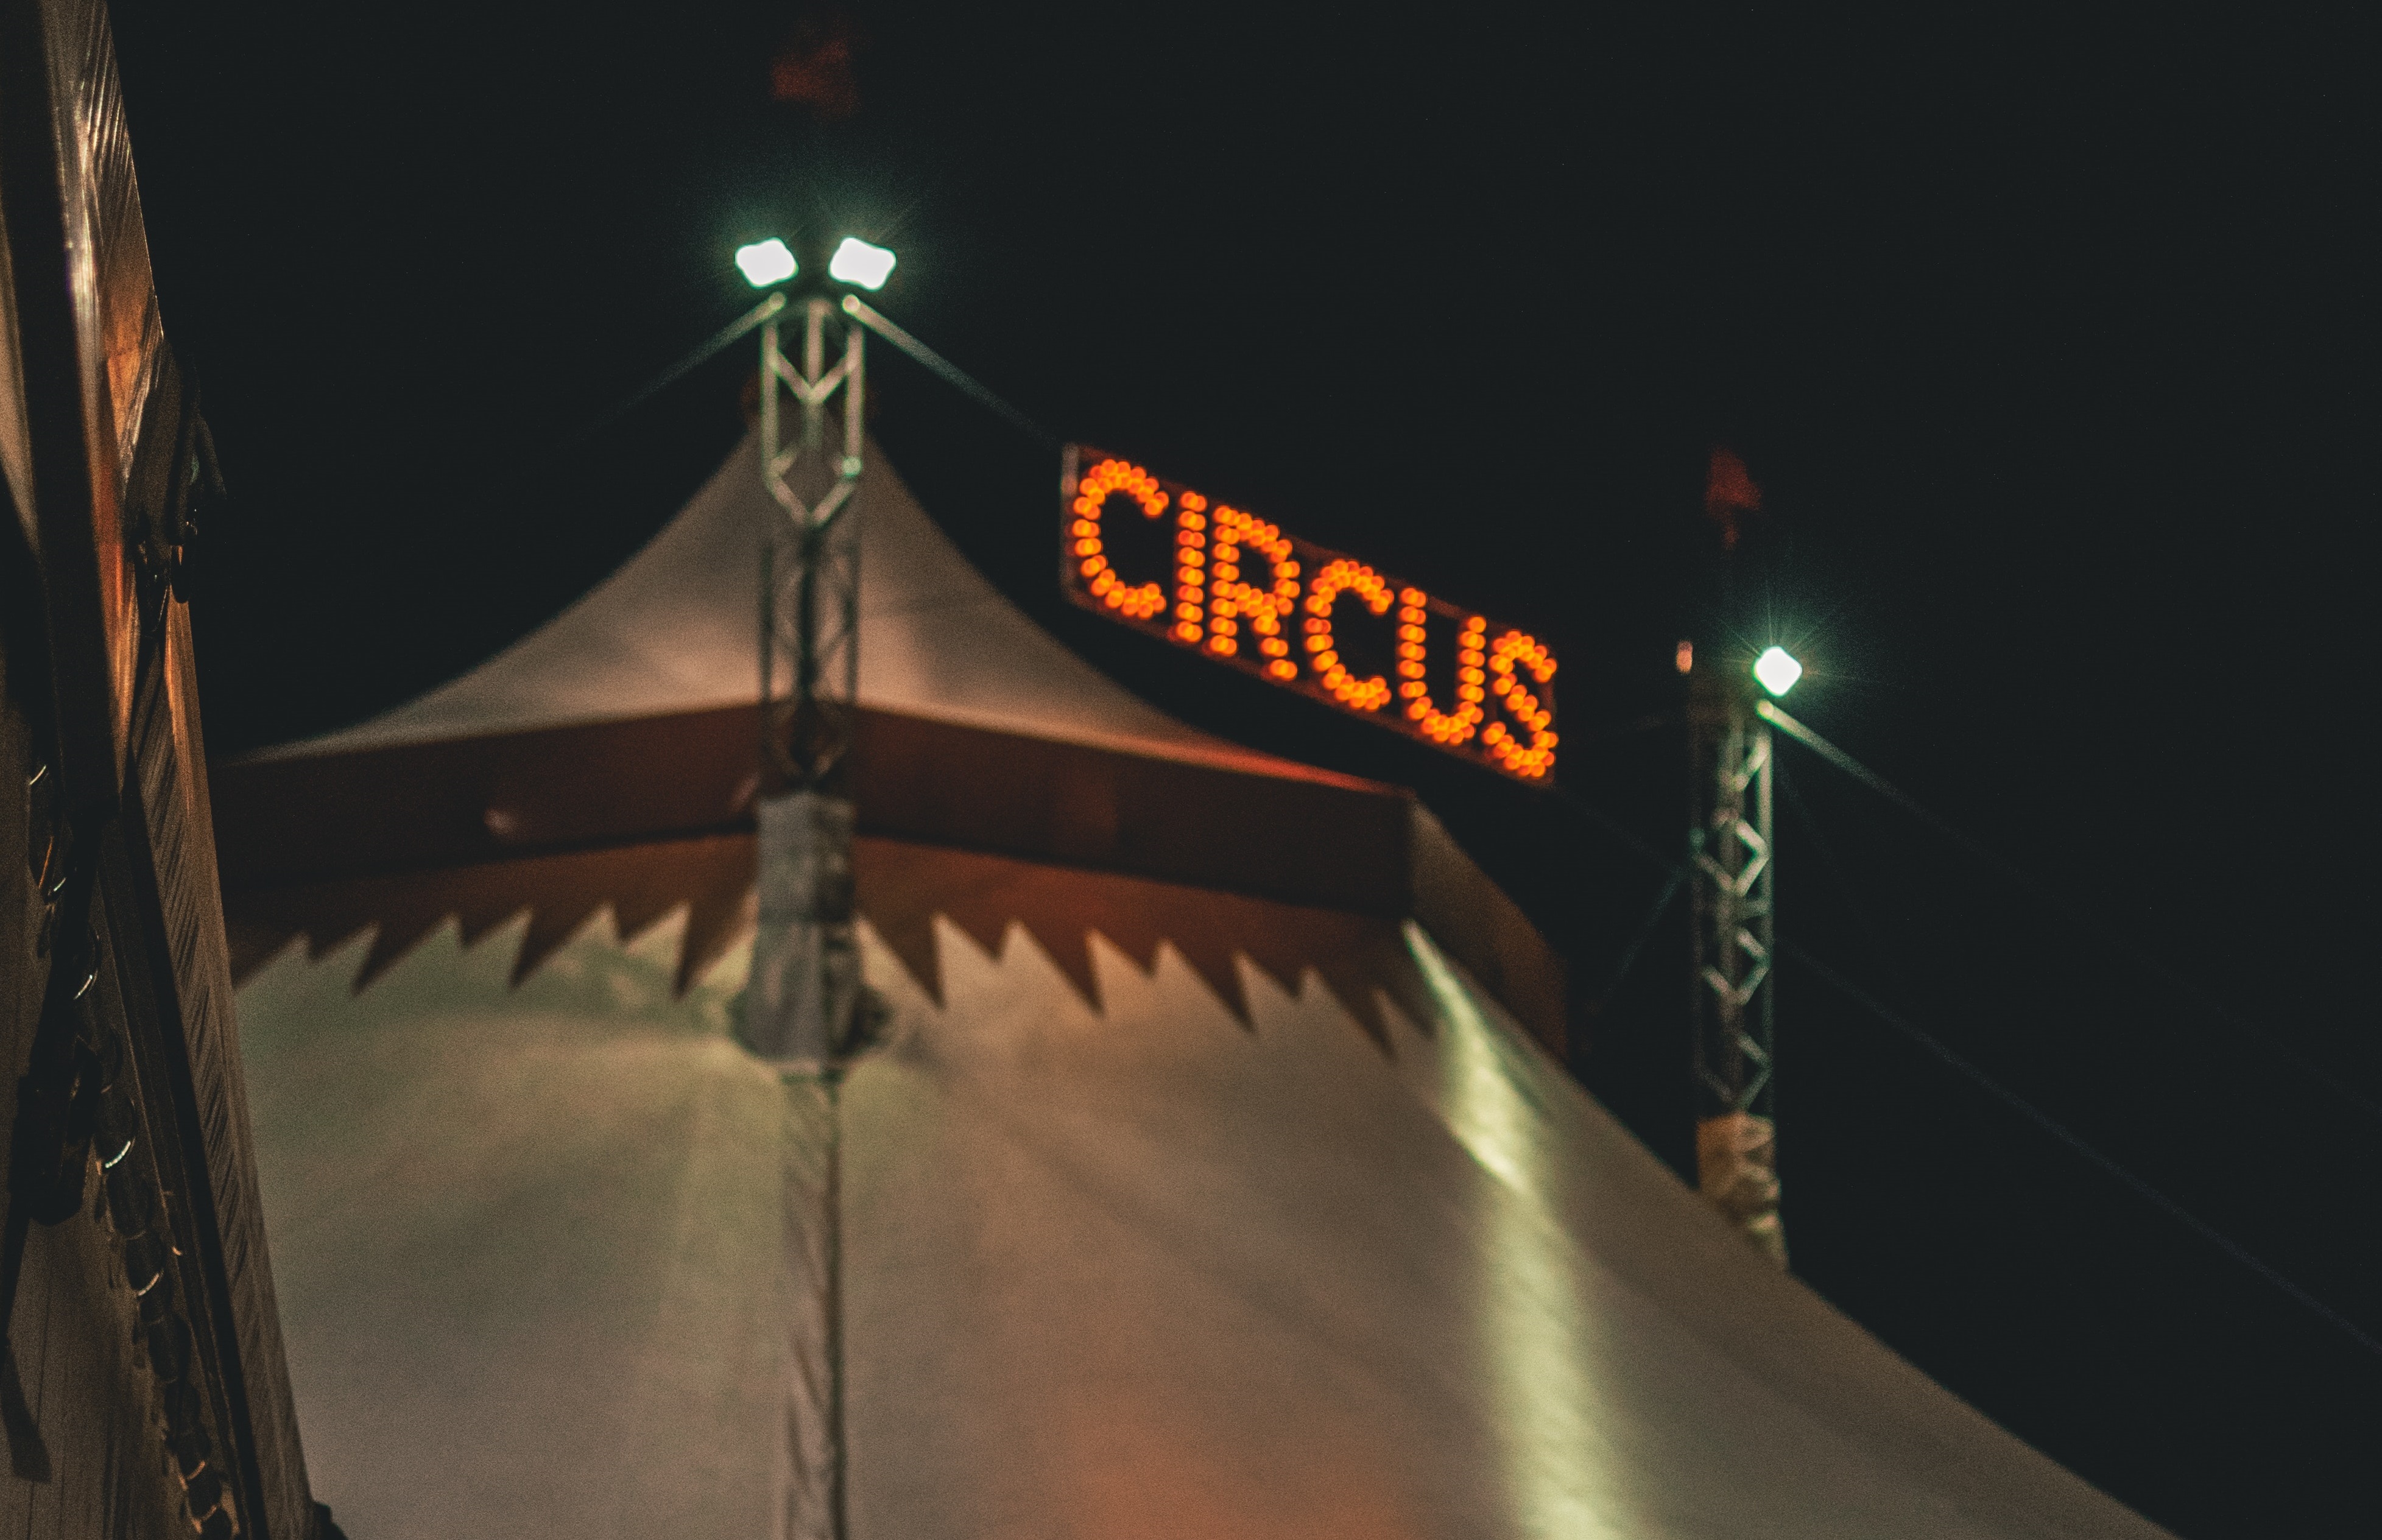 Цирк - || фото: Zachary DeBottis / Pexels